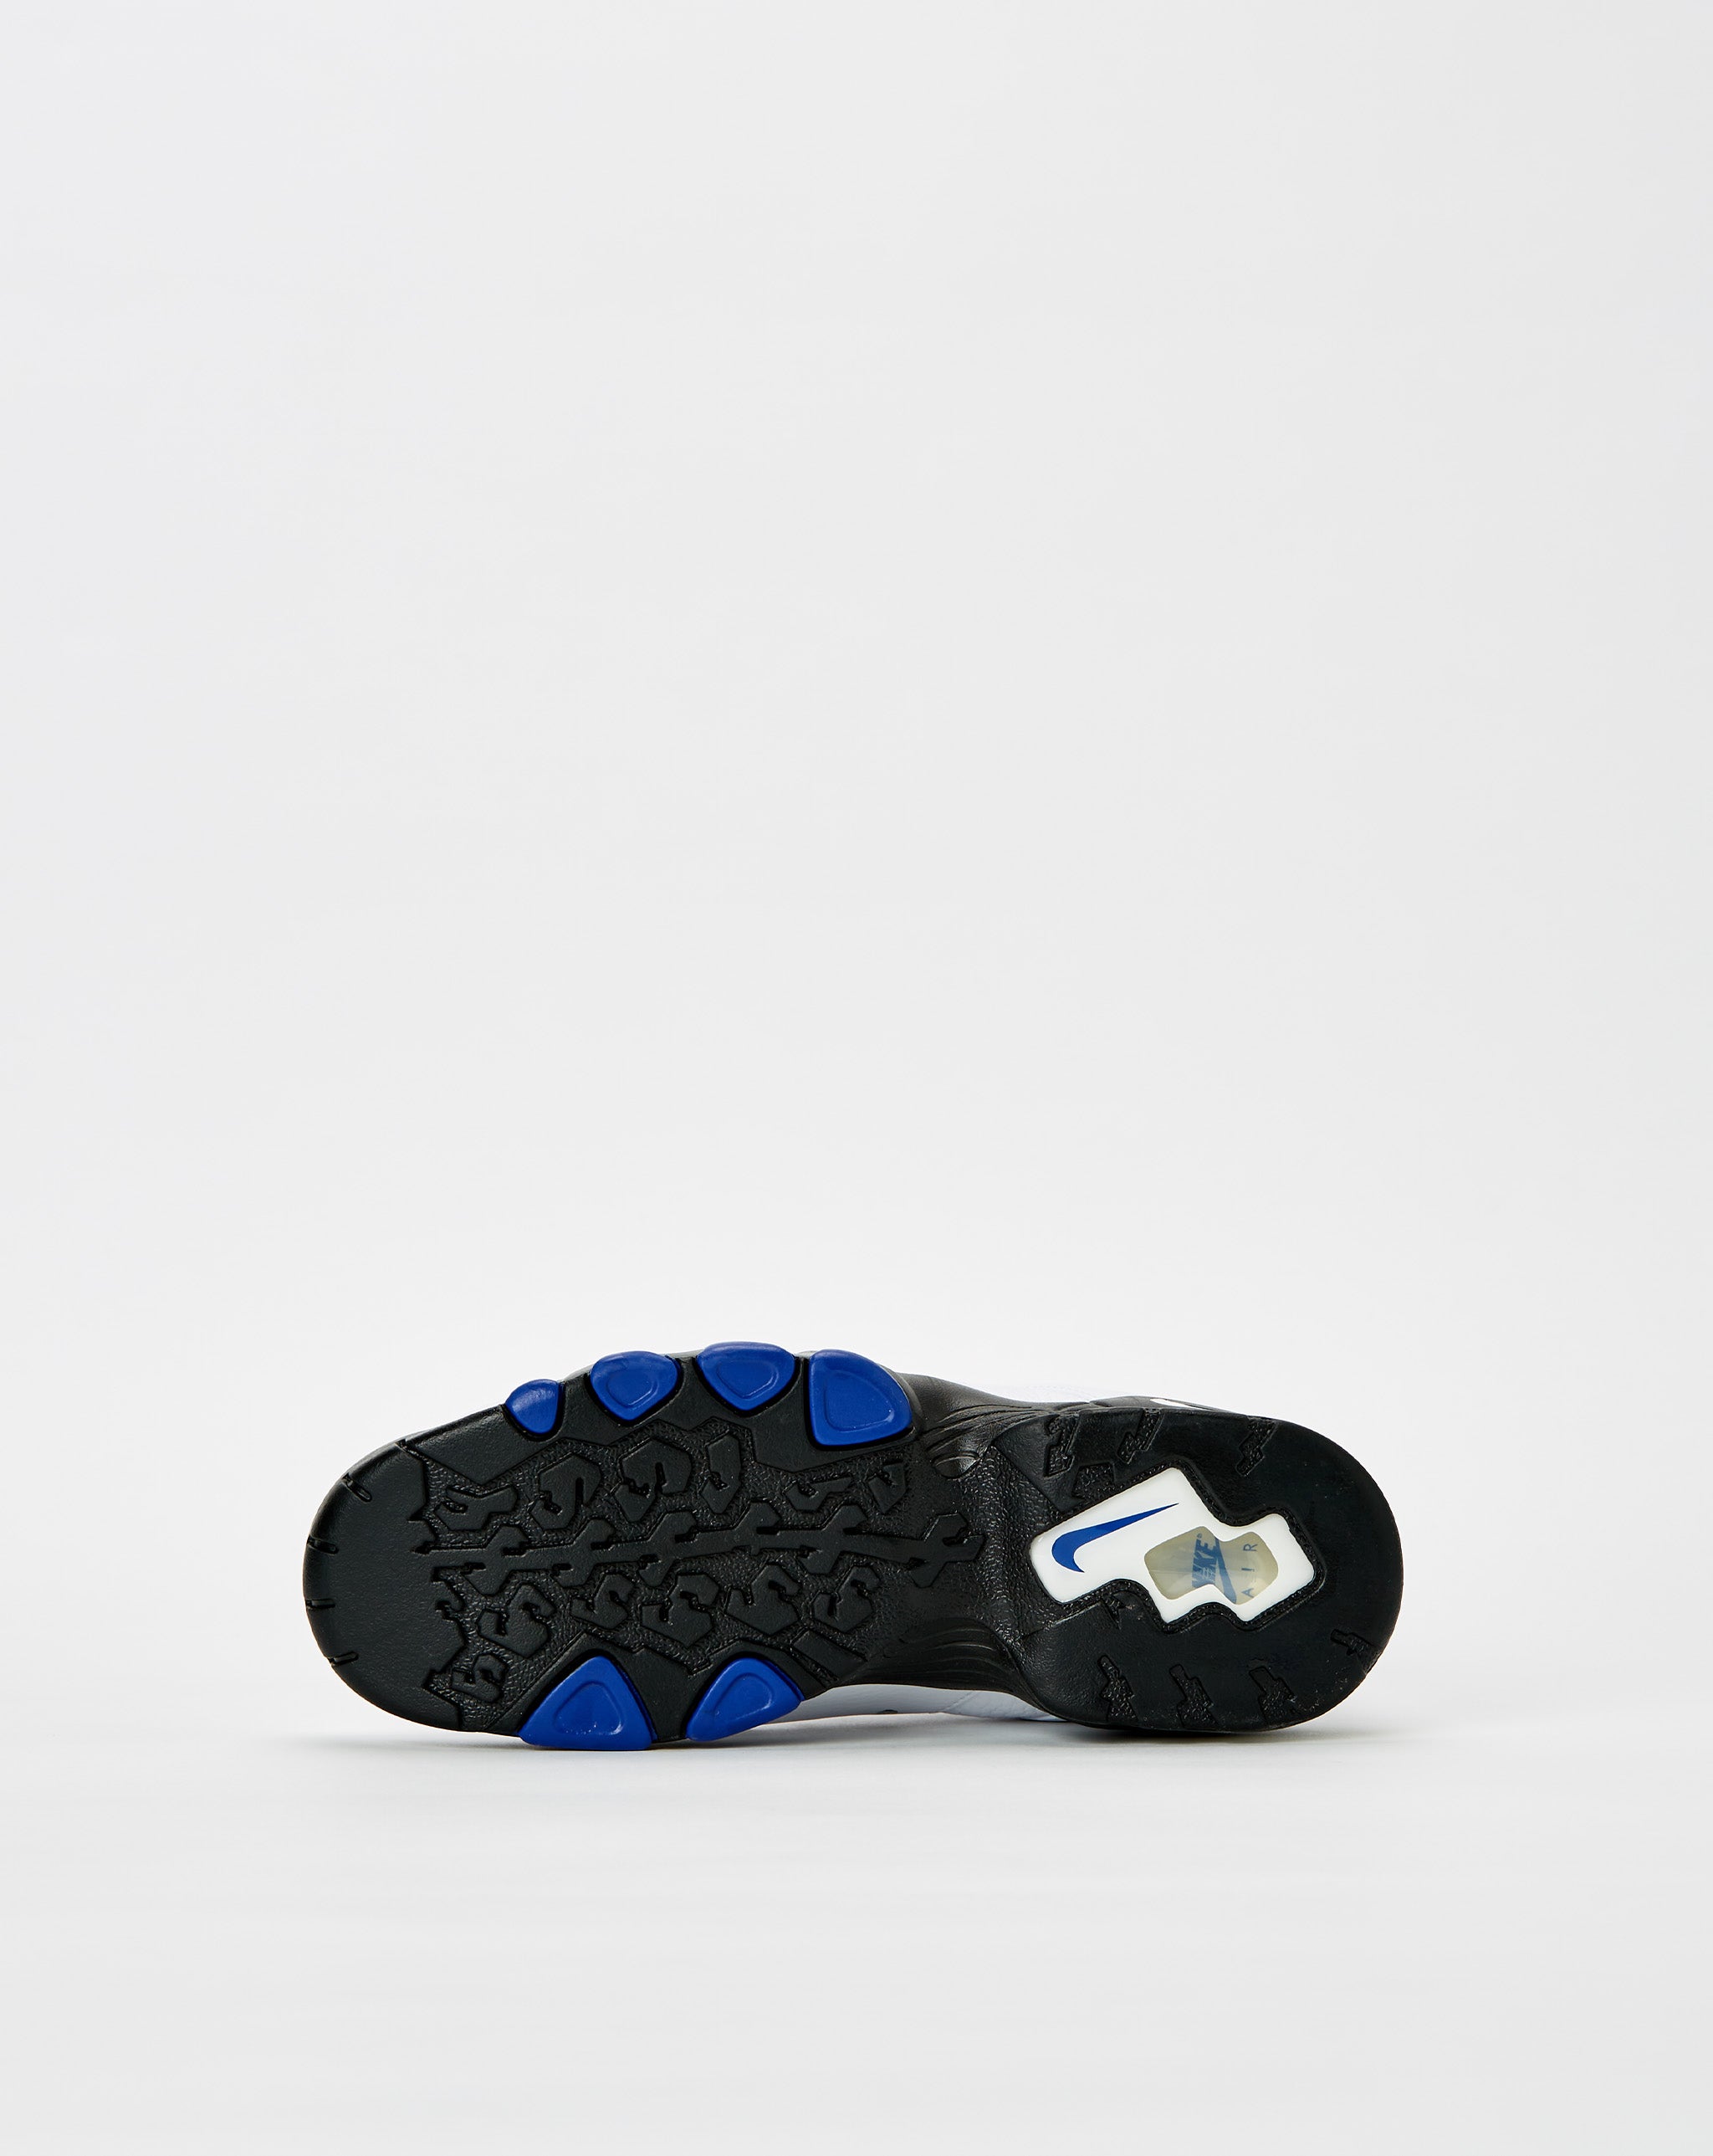 Nike mens nike air max 97 desert sand racer blue  - Cheap Erlebniswelt-fliegenfischen Jordan outlet